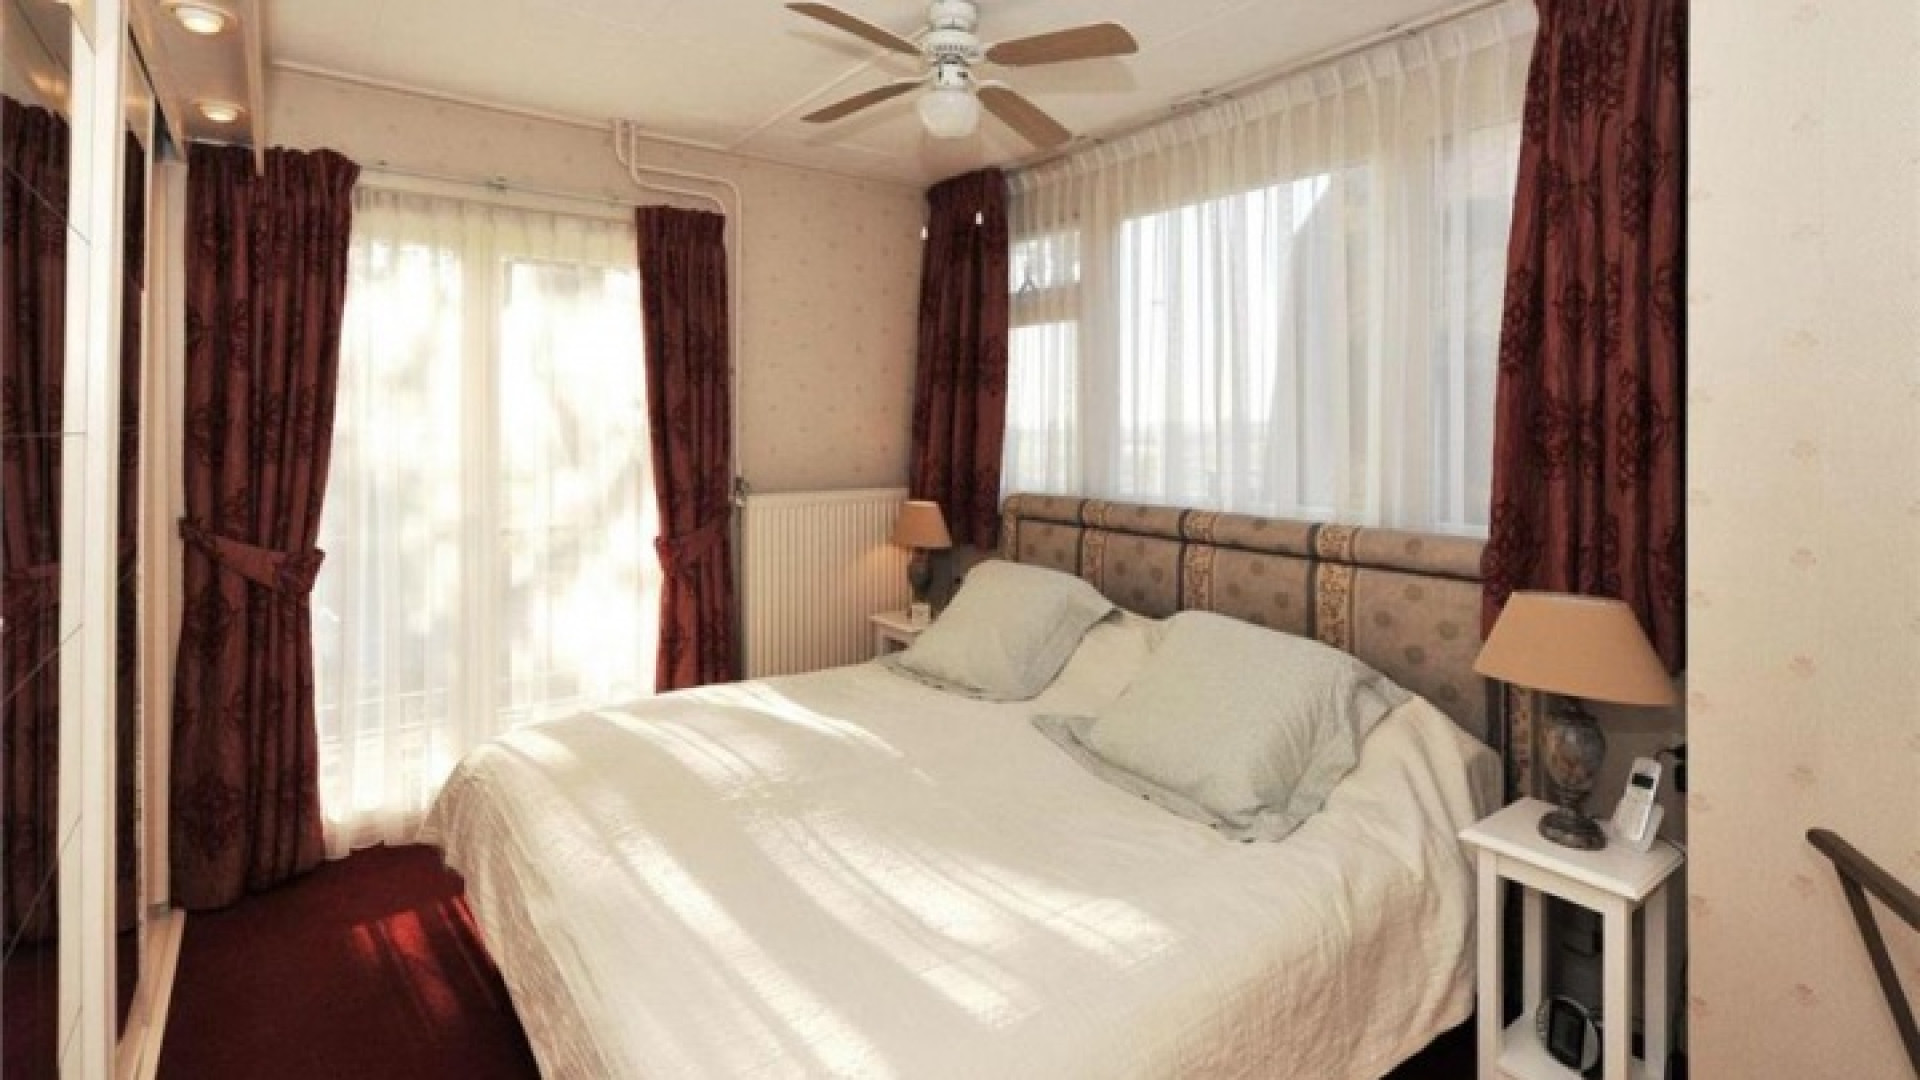 Georgina Kwakye koopt haar droomhuis in Zandvoort. Zie foto's!